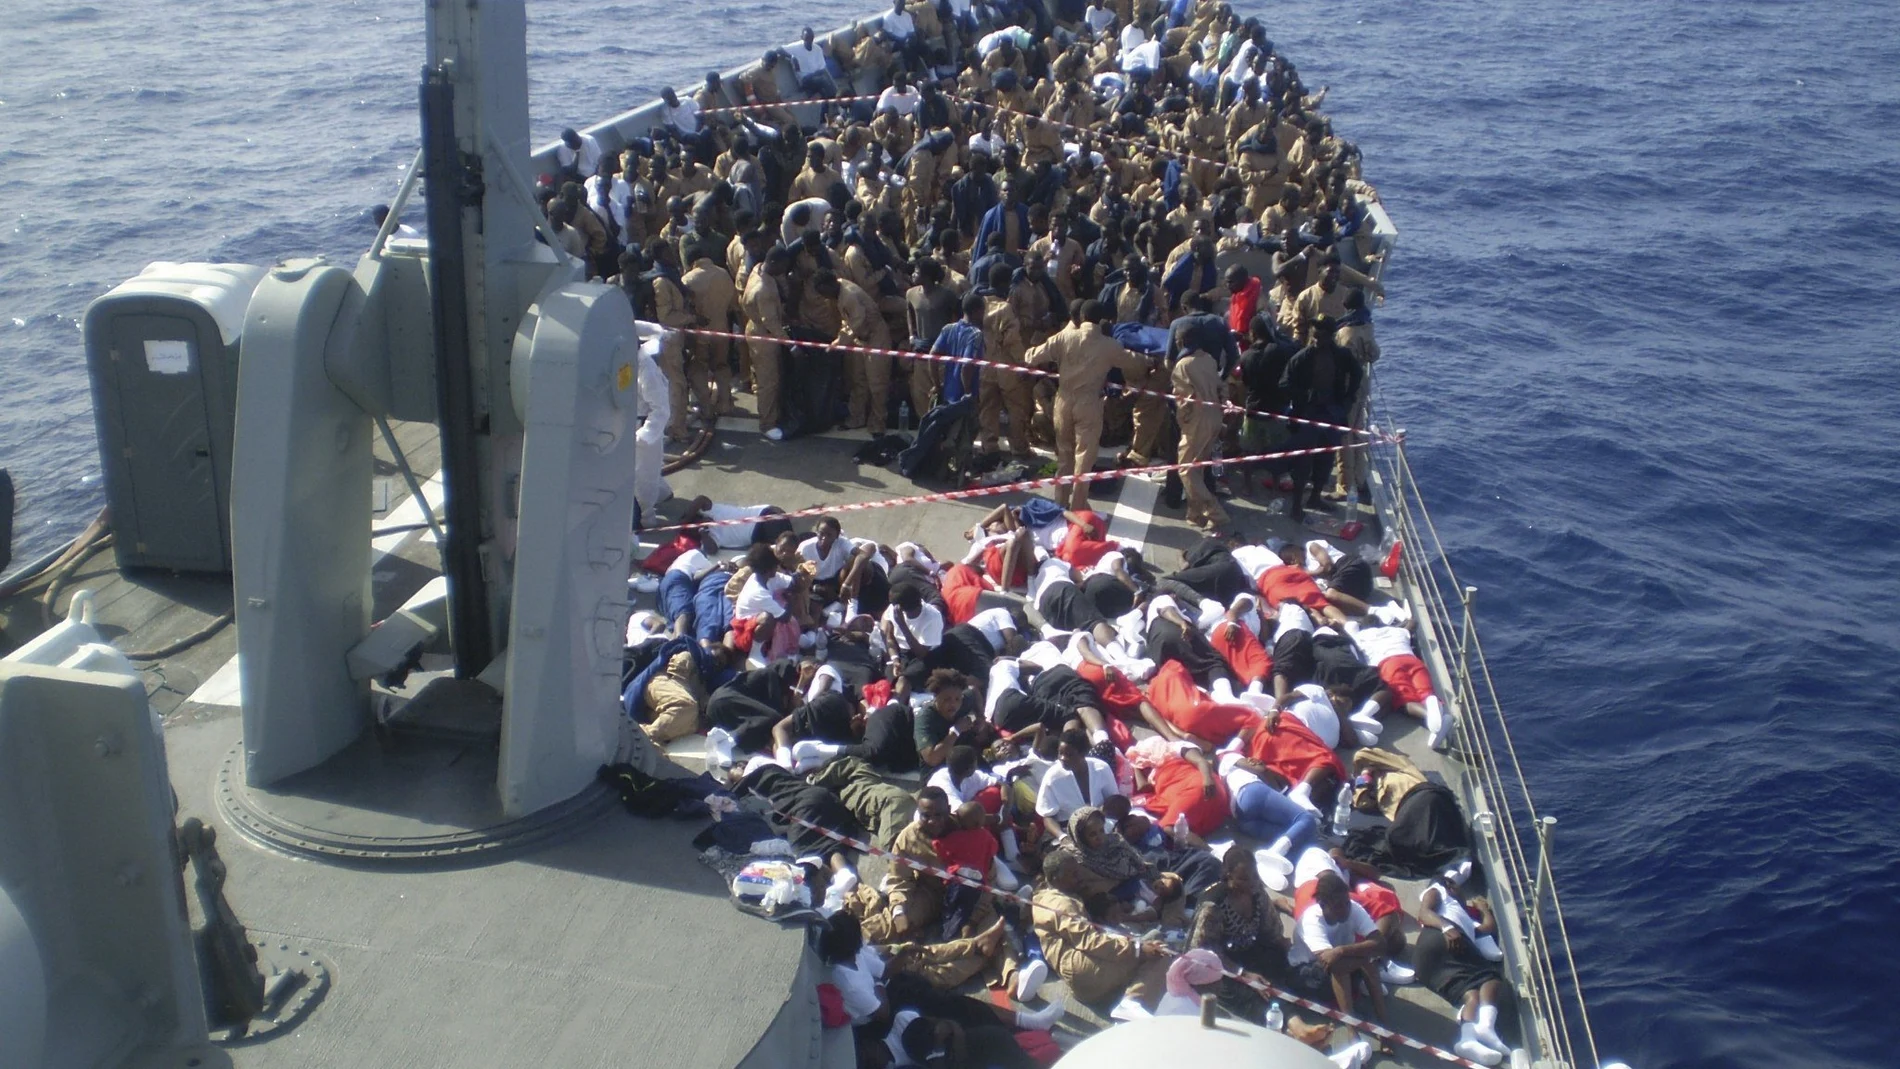 Rescate de inmigrantes llevado a cabo por la fragata "Navarra" en 2016 en la "Operación Sophia" en el Mediterráneo